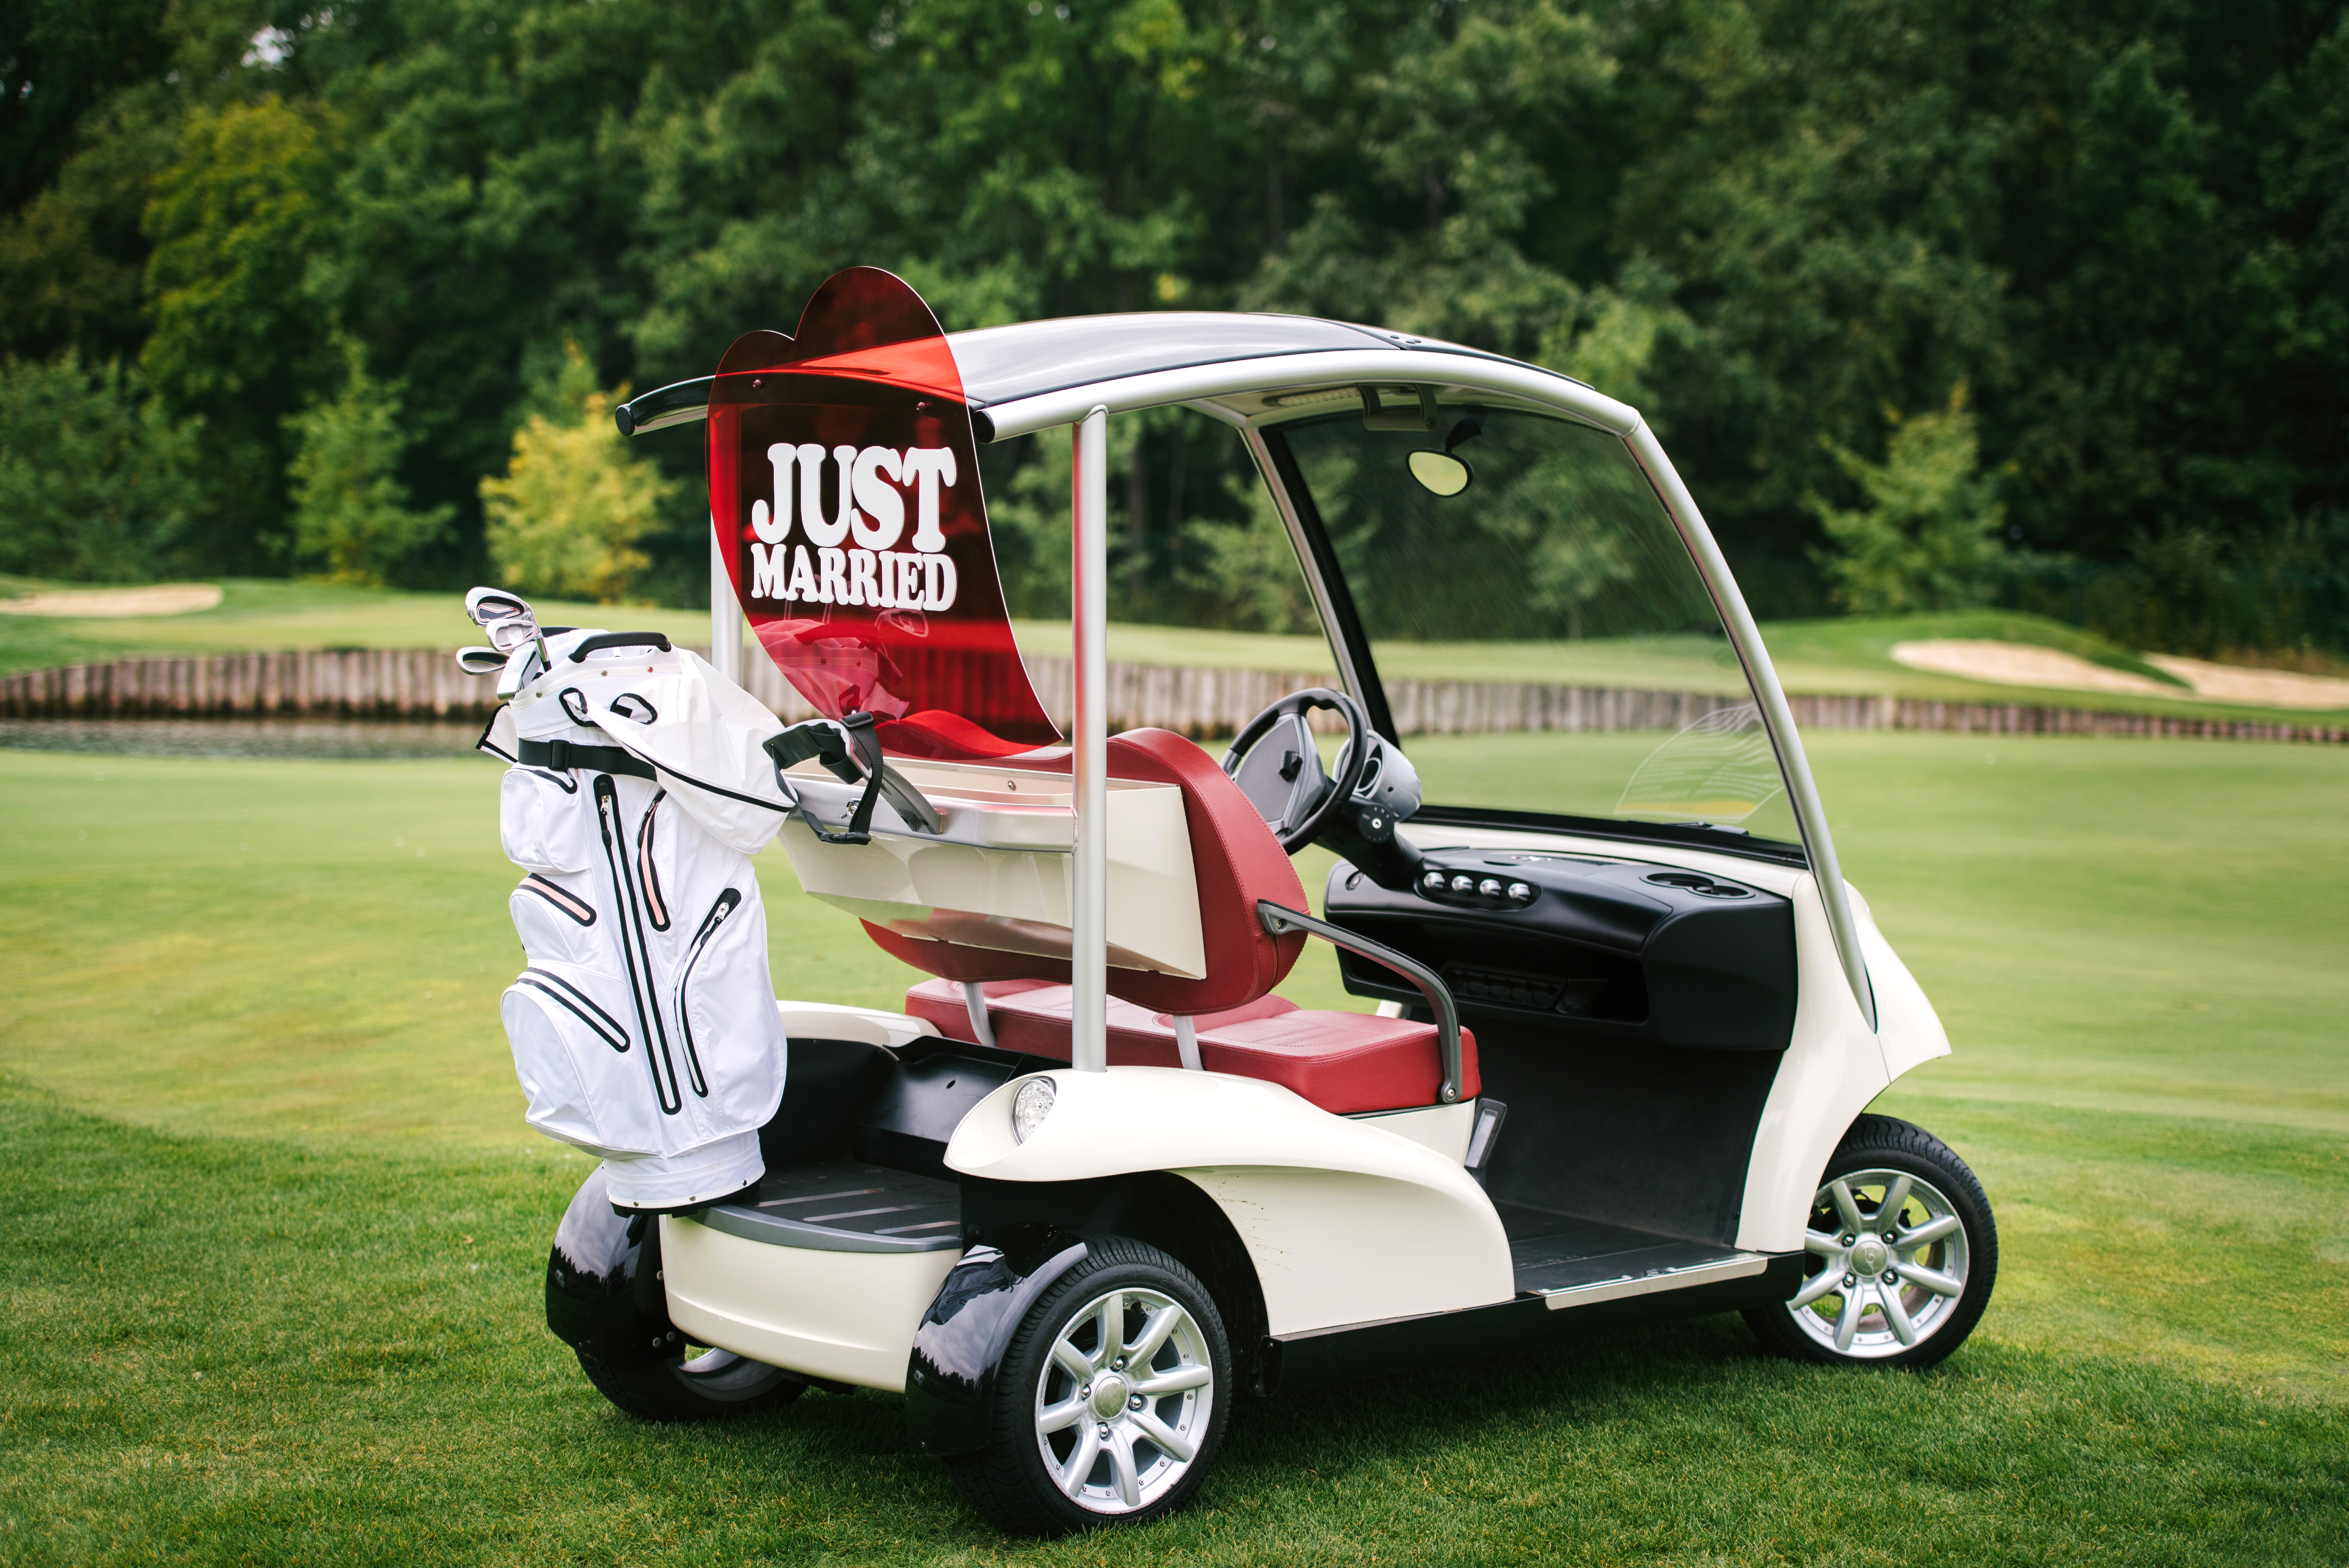 Un carrito de golf con un cartel de "Recién casados" | Fuente: Shutterstock